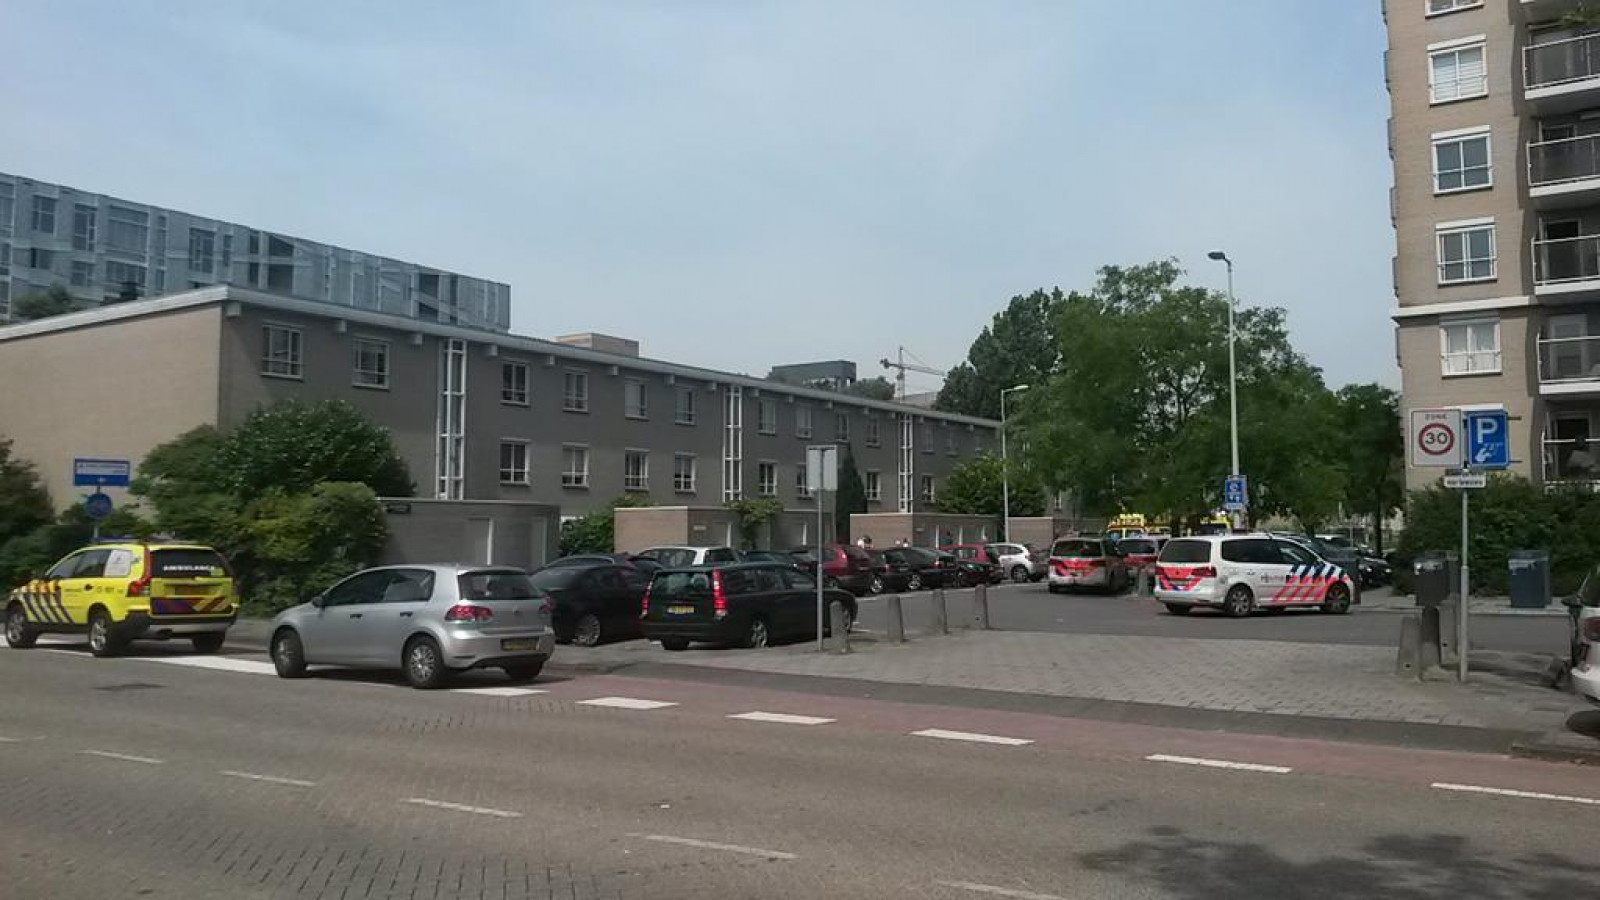 Politie schiet verdachte neer in Buitenveldert